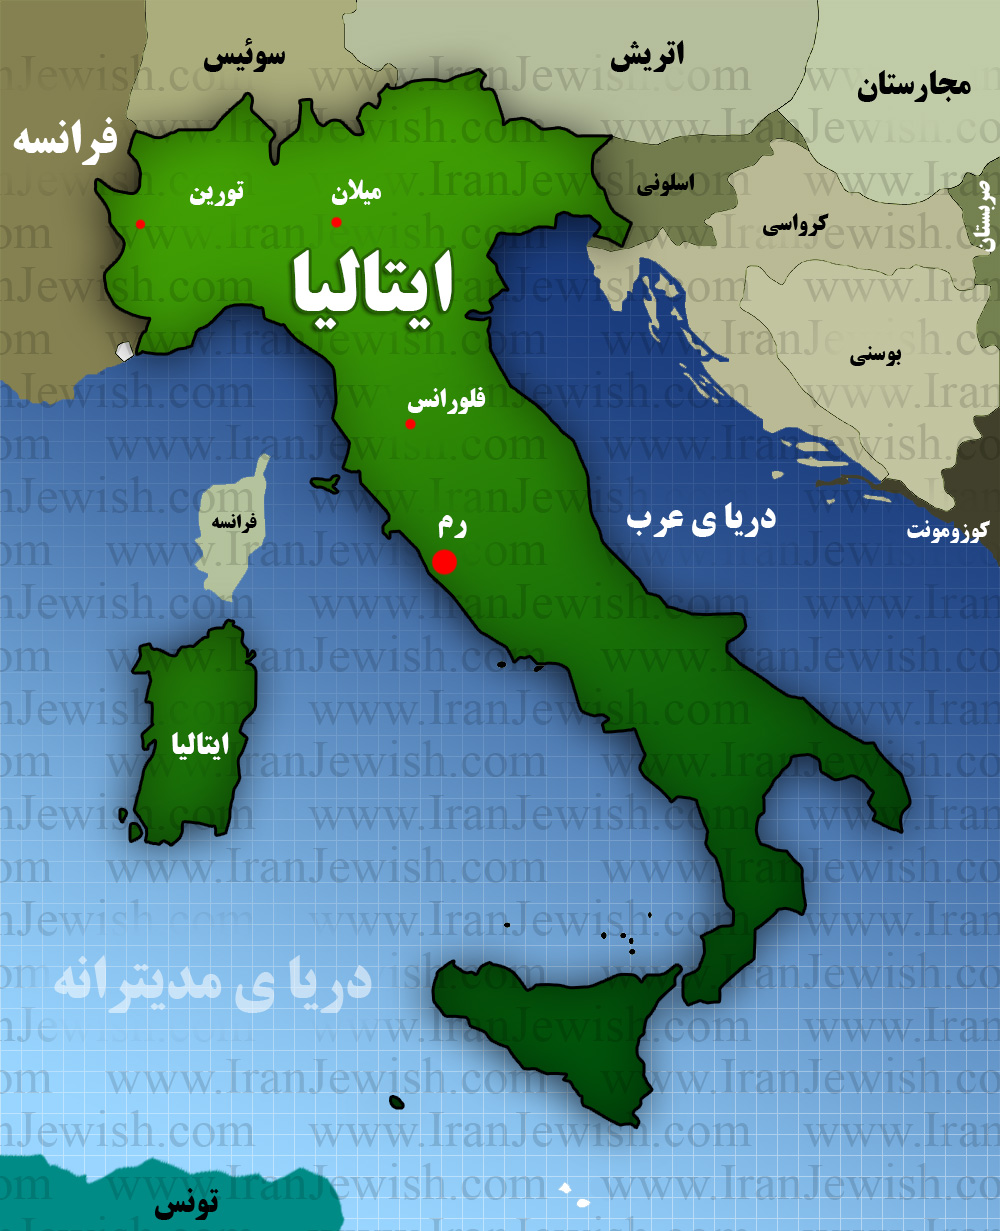 نقشه کشور ایتالیا و کشورهای همسایه و دریا ی مدیترانه و دریای عرب و شهر های مهم یهودی نشید از ایتالیا